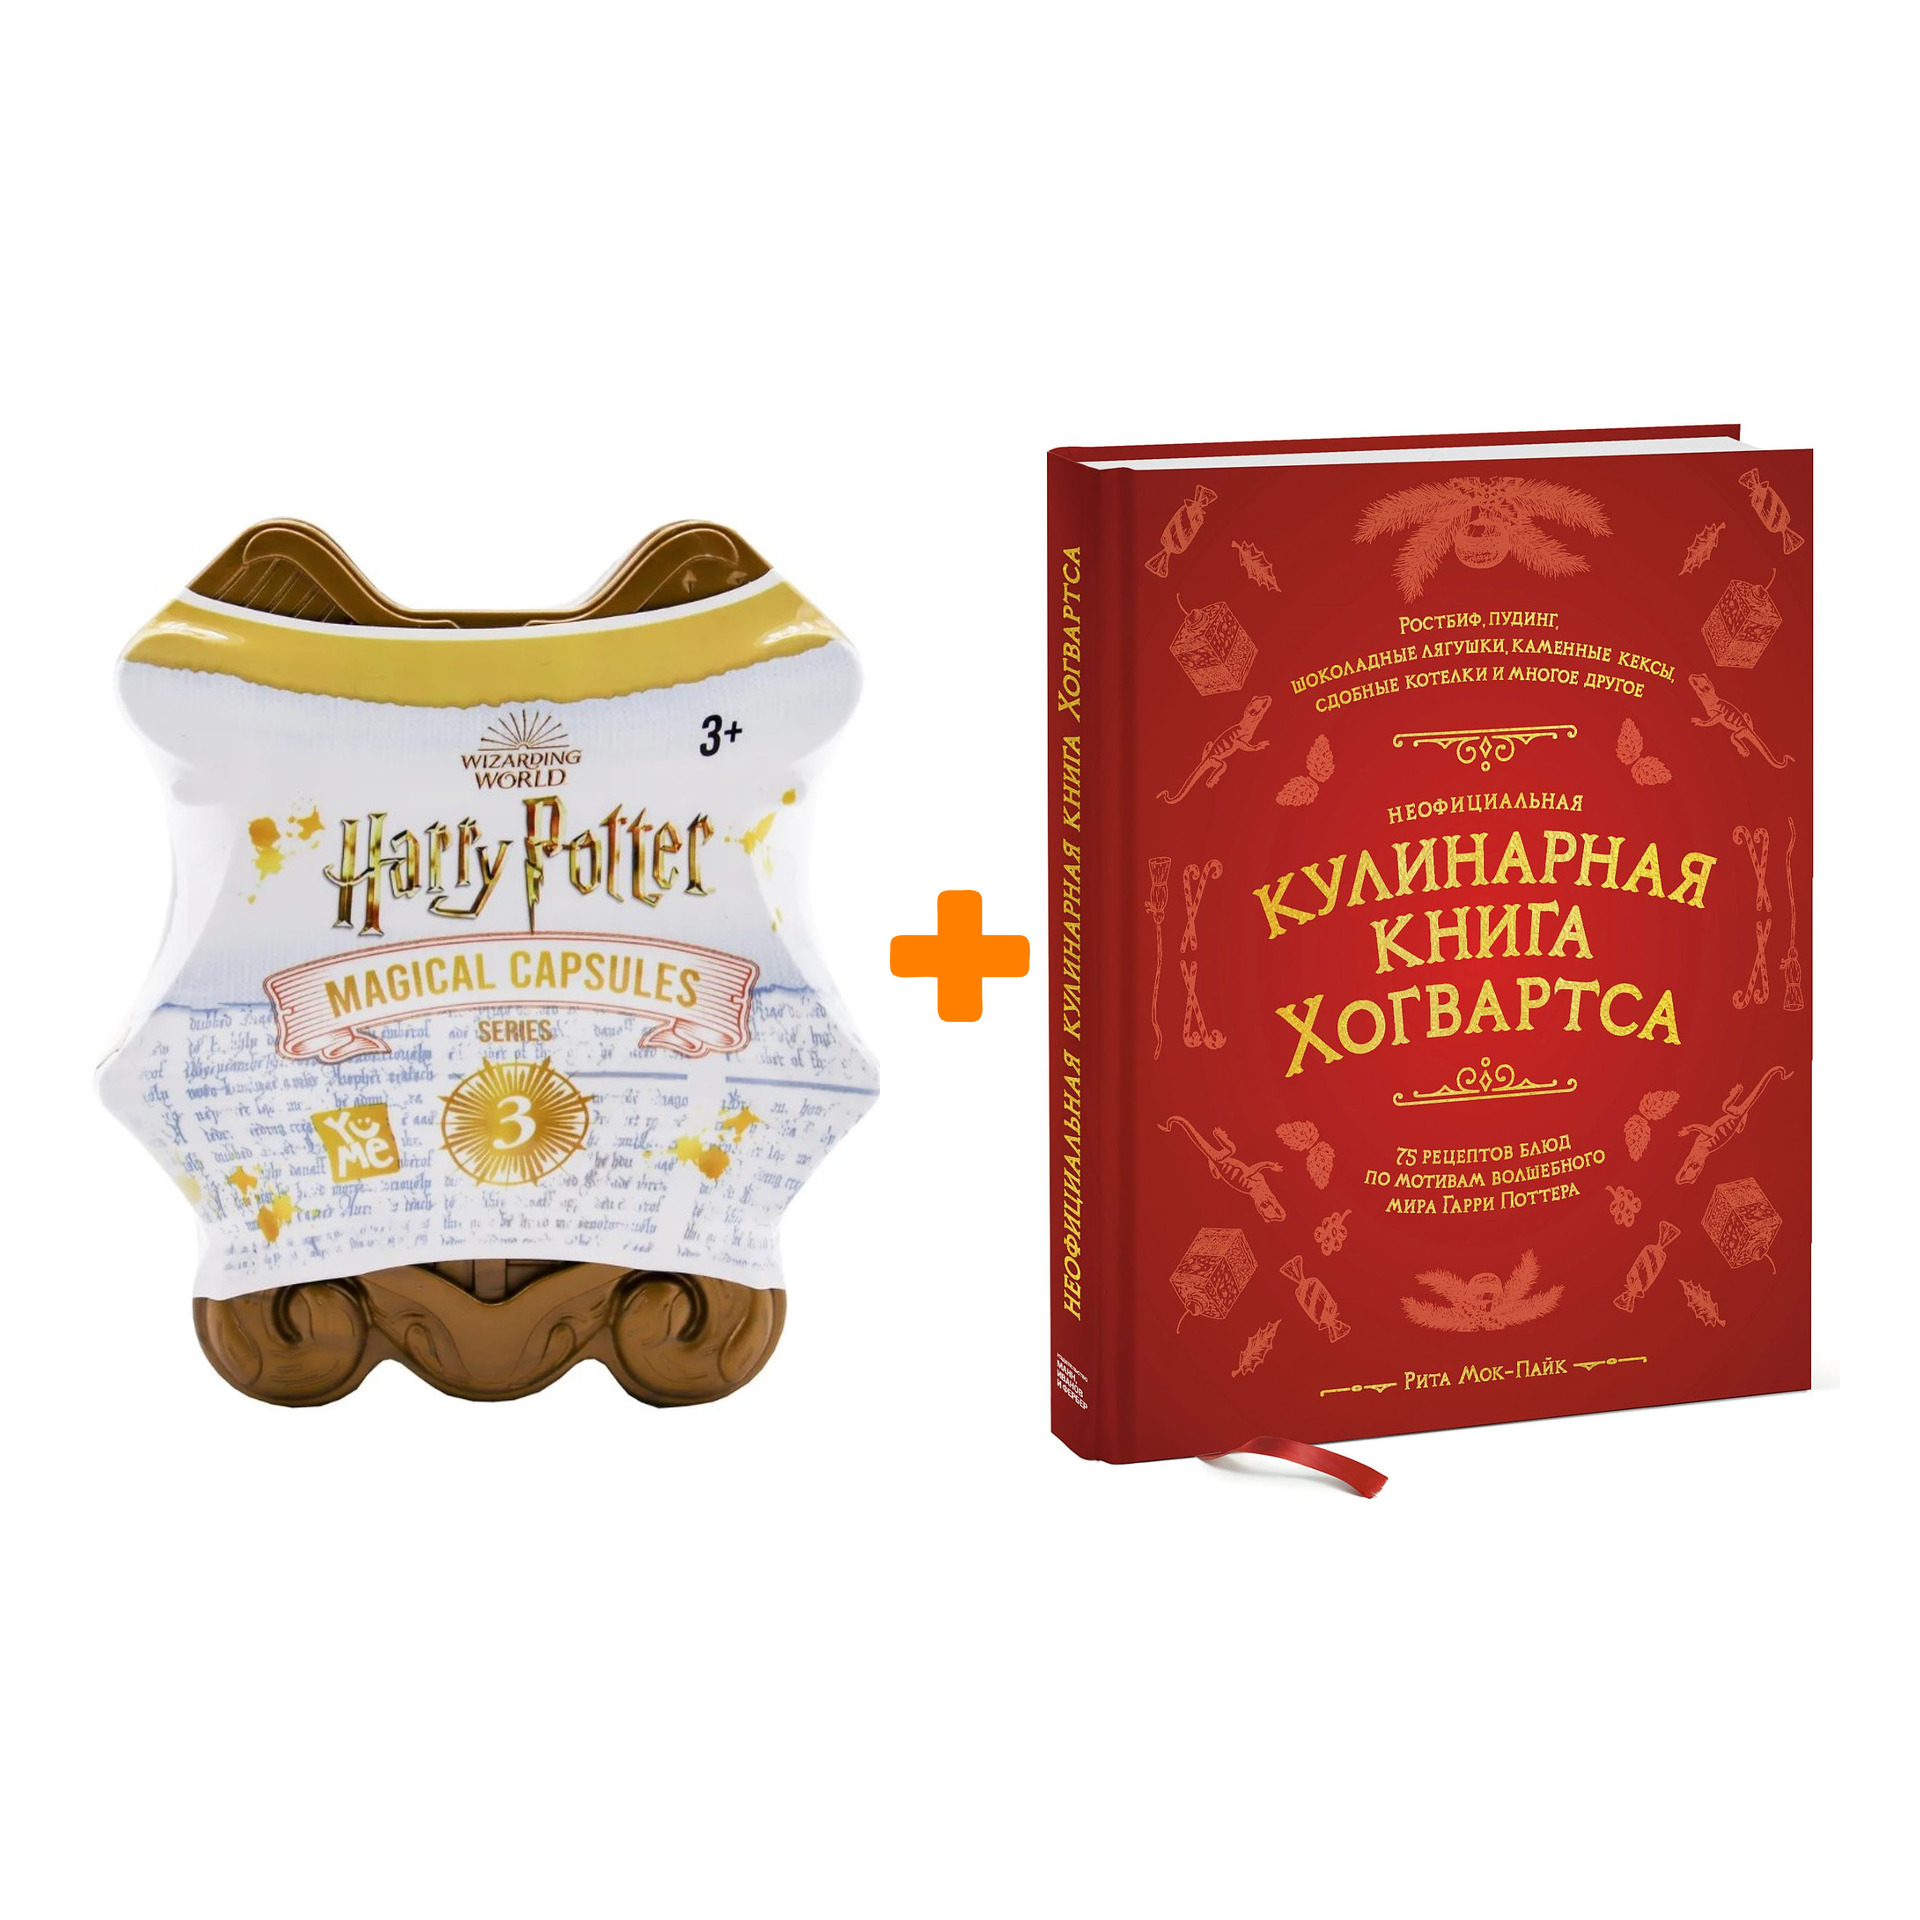 Набор Harry Potter Магическая капсула Серия 3 + кулинарная книга